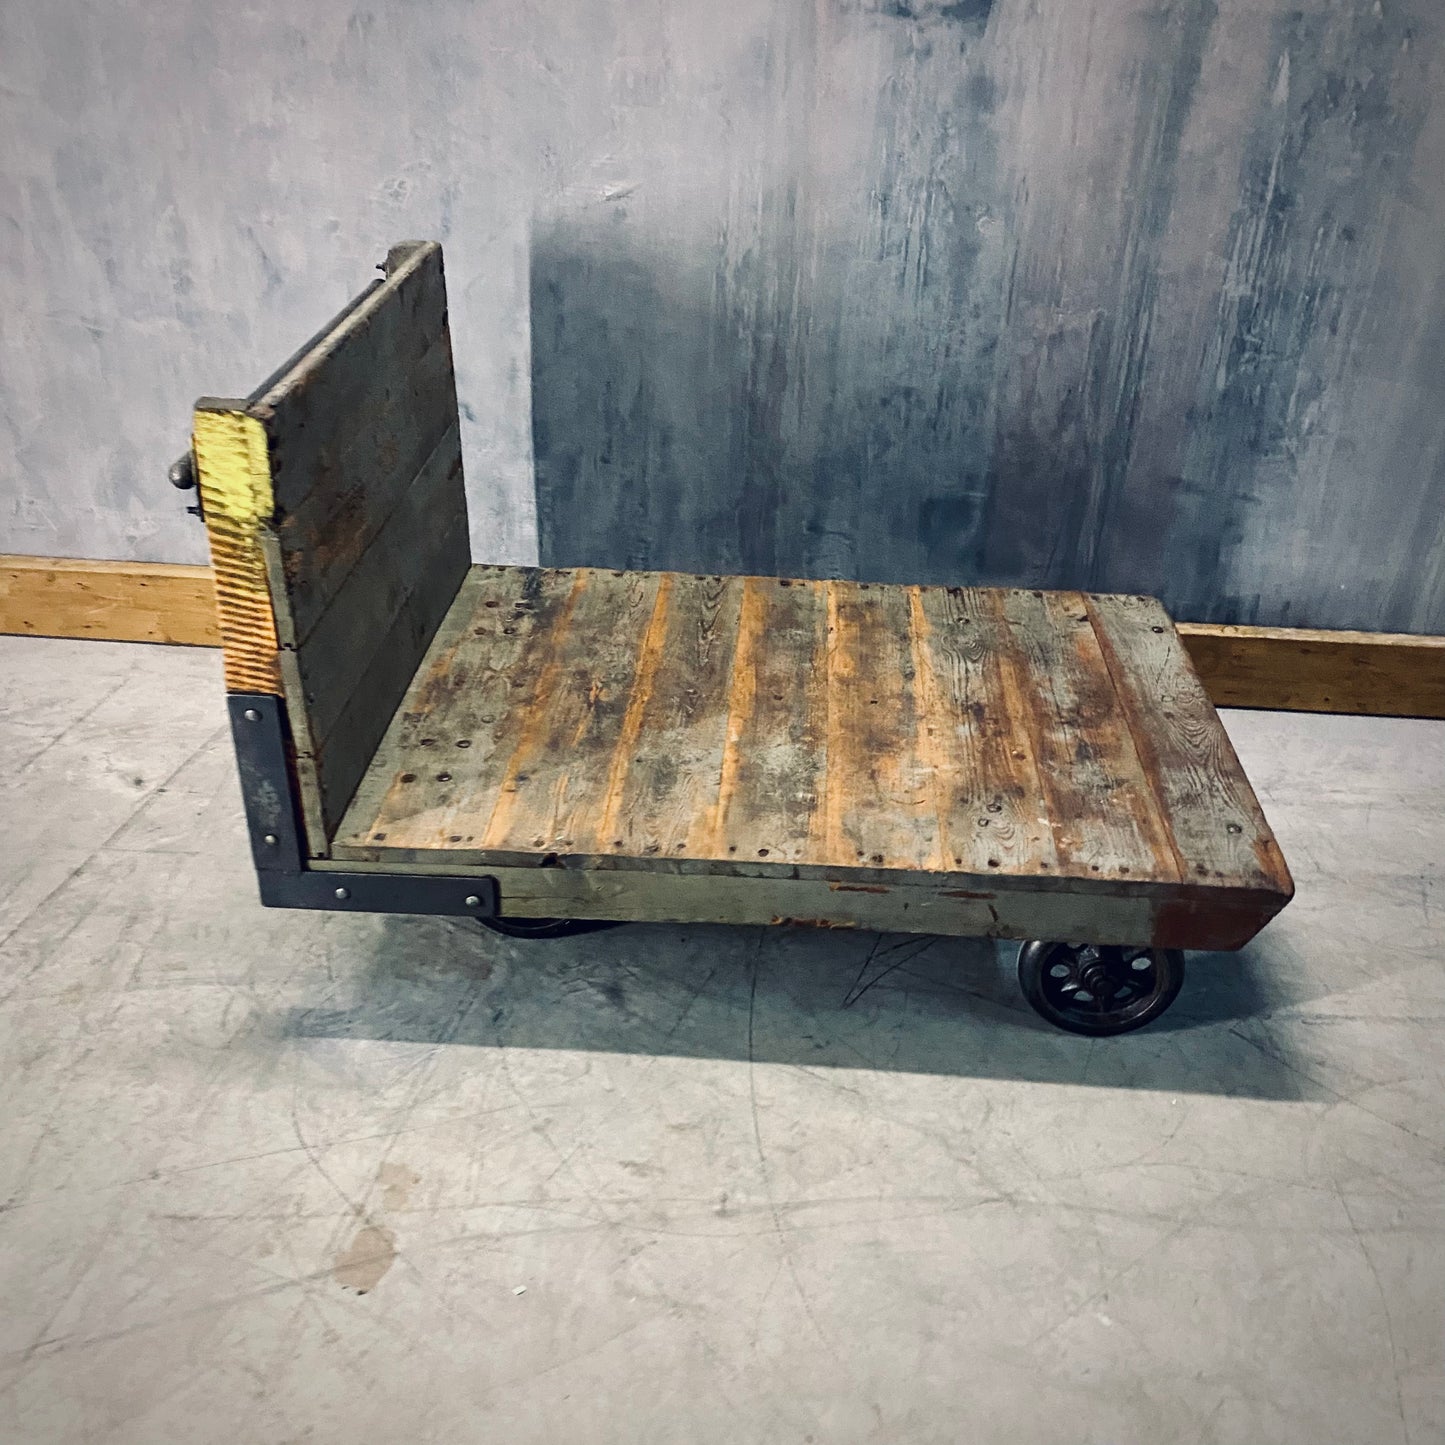 Industrial heavy duty cart / trolley